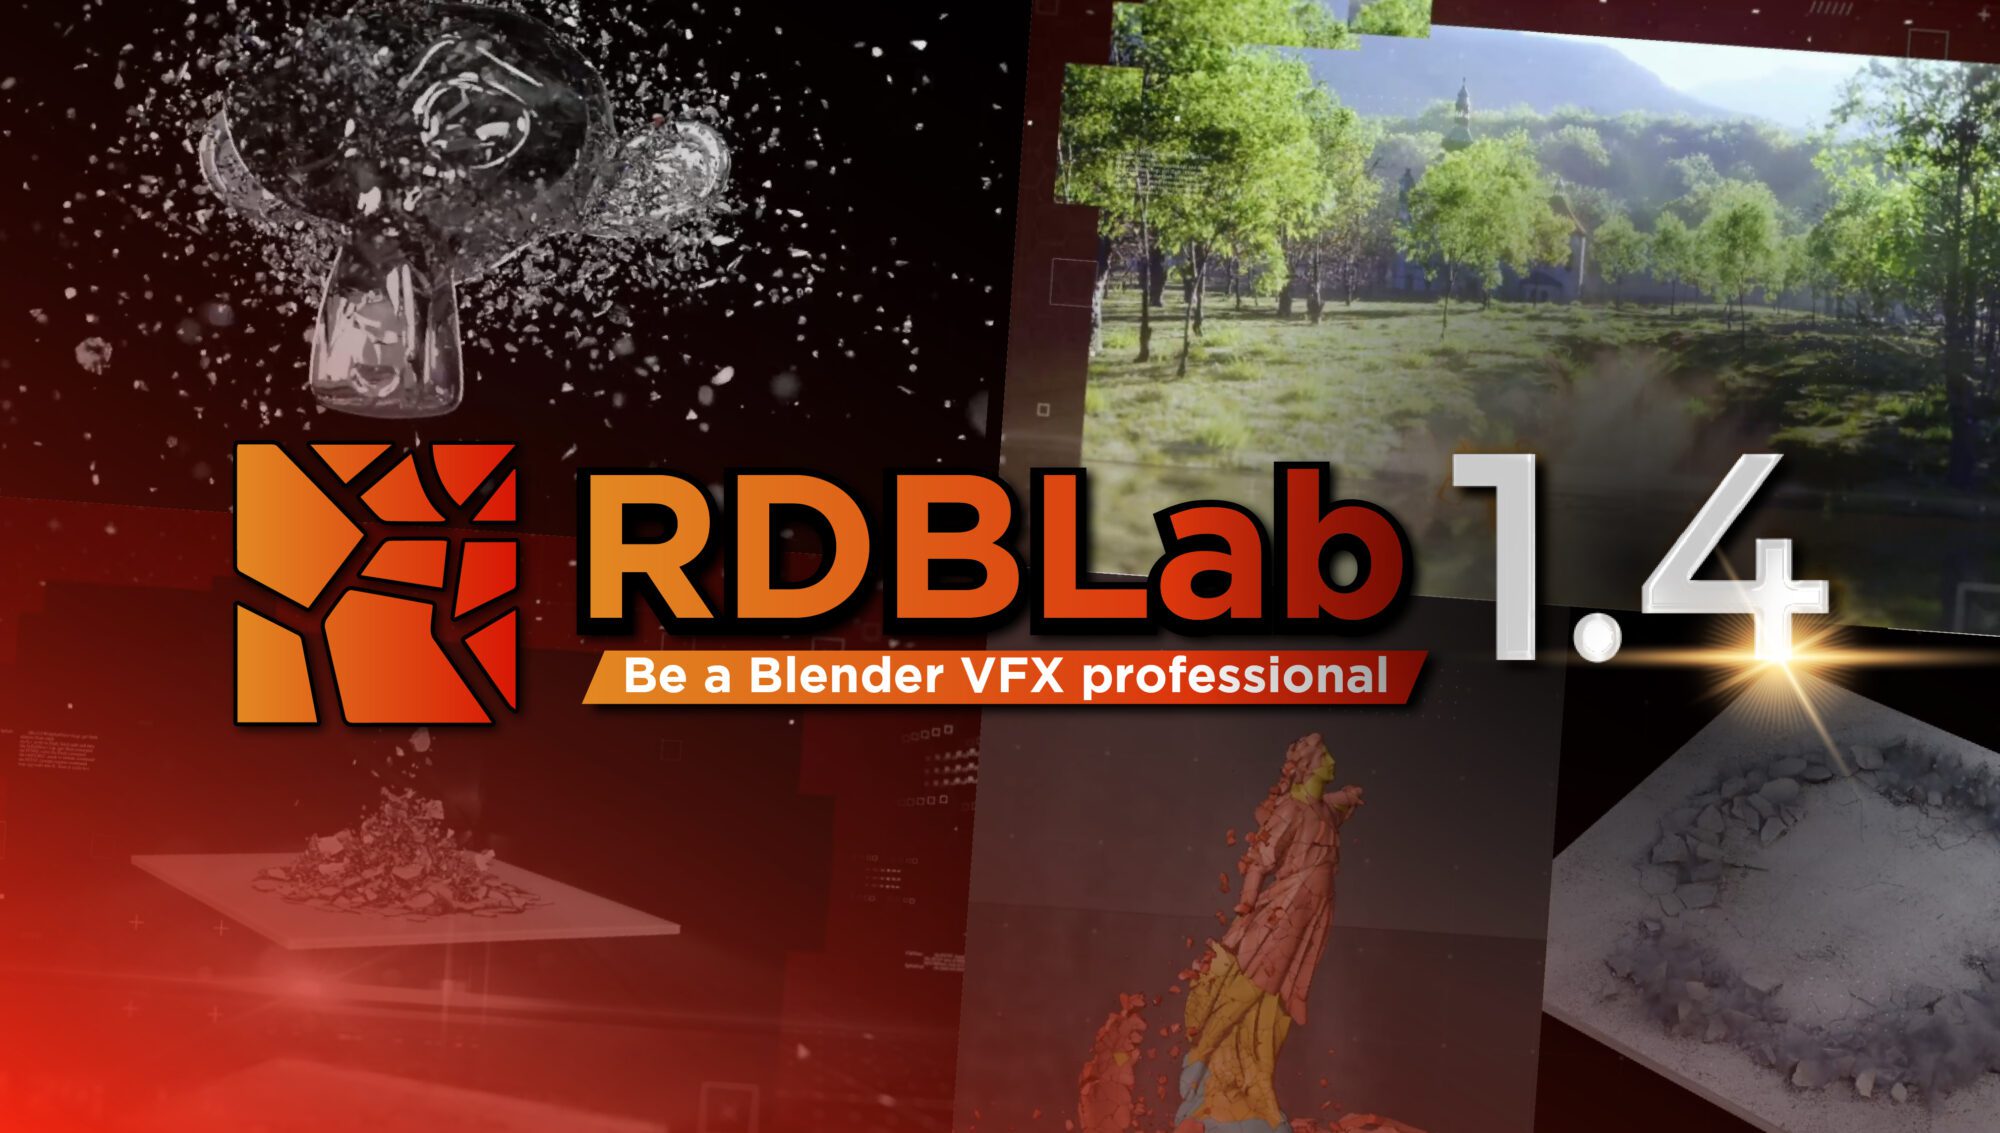 RBDLab 1.4